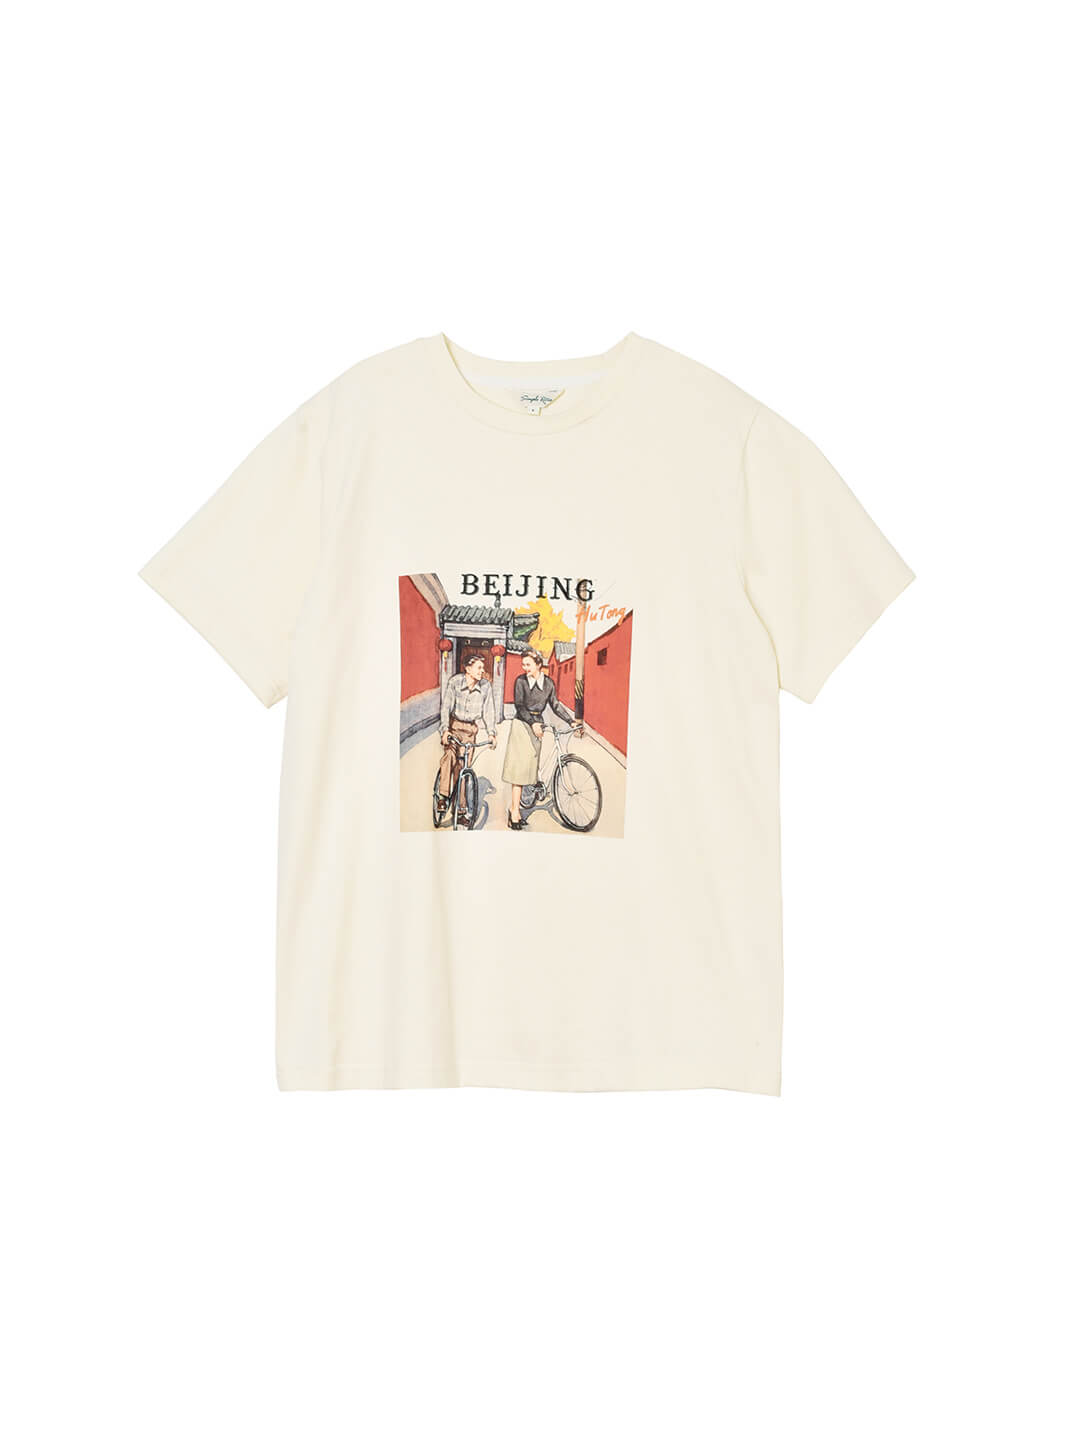 Jack Retro Graphic Cream T-shirt – Simple Retro